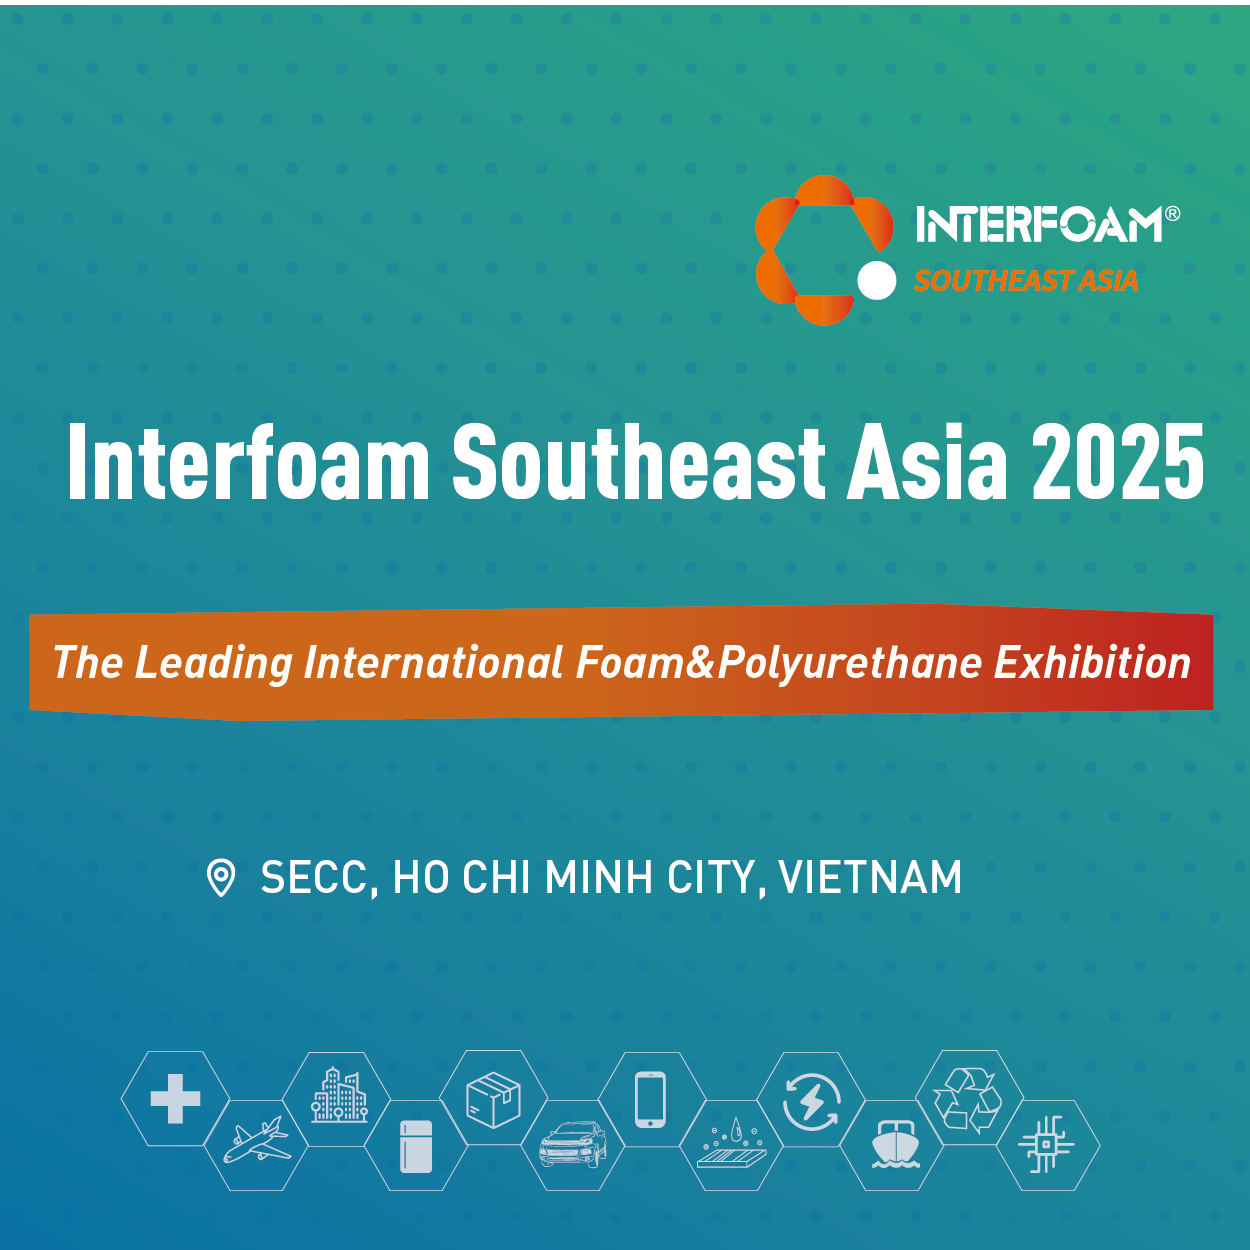 Interfoam Southeast Asia 2025